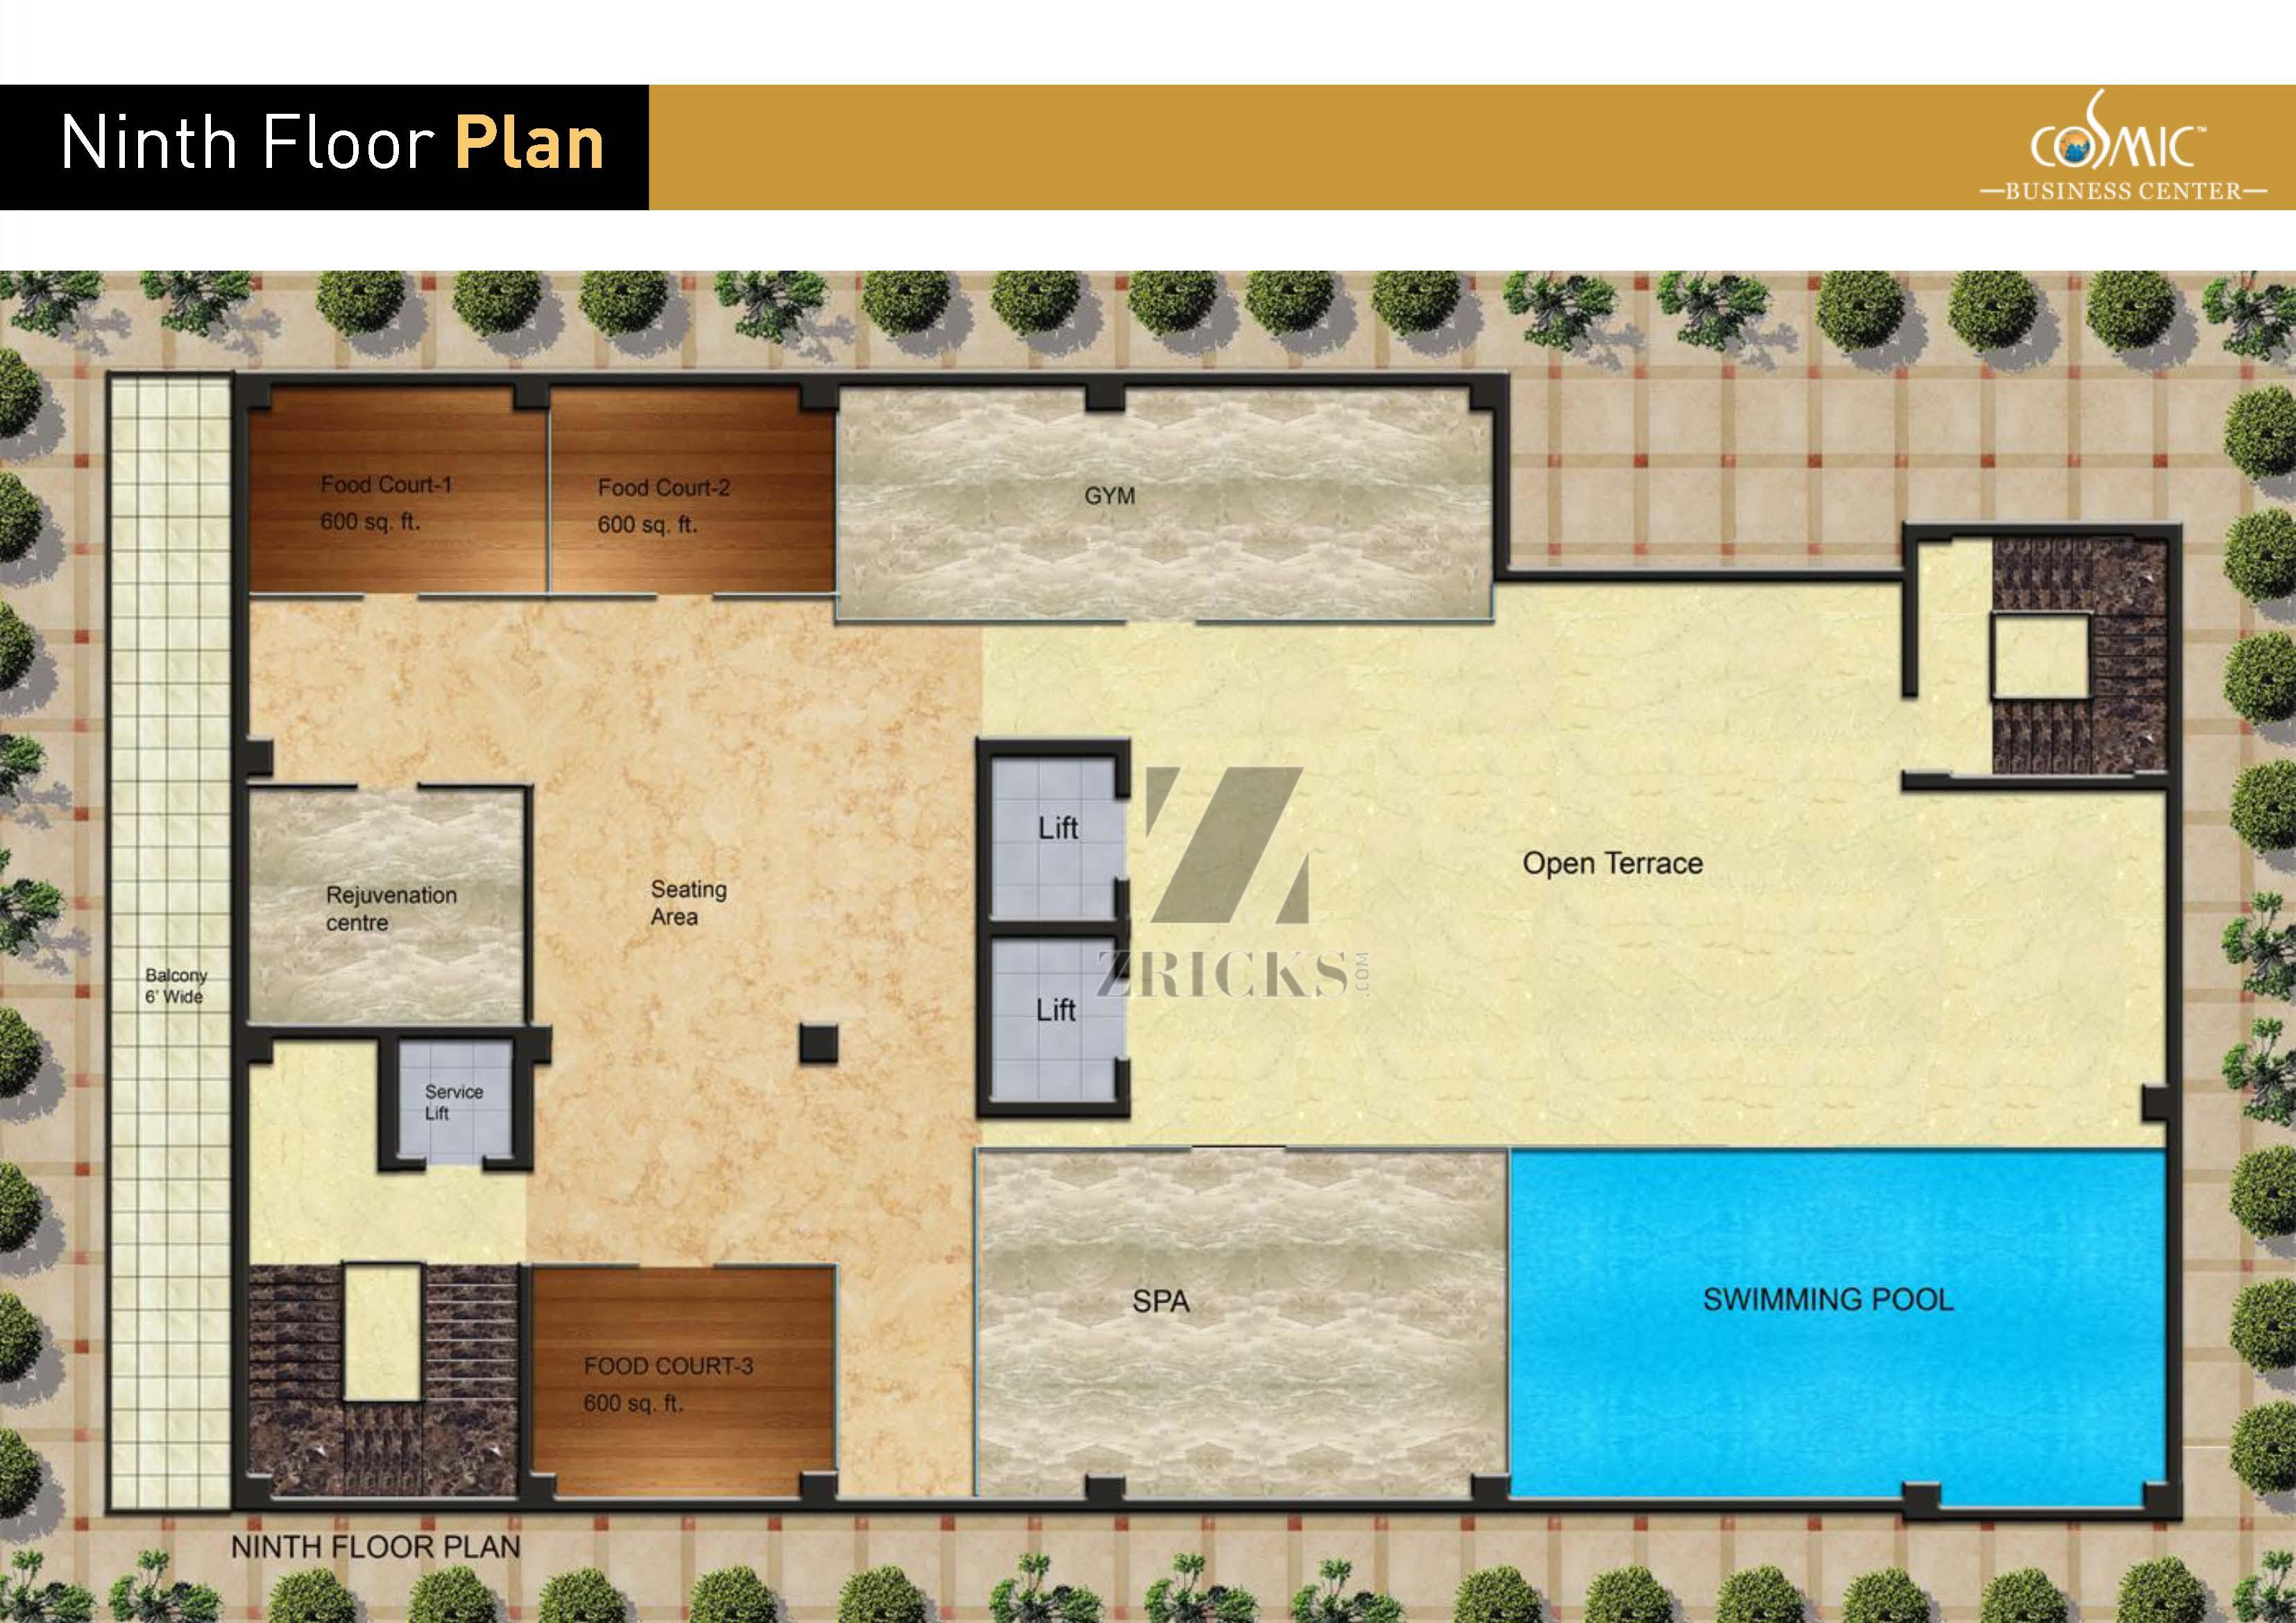 Cosmic Business Center Floor Plan